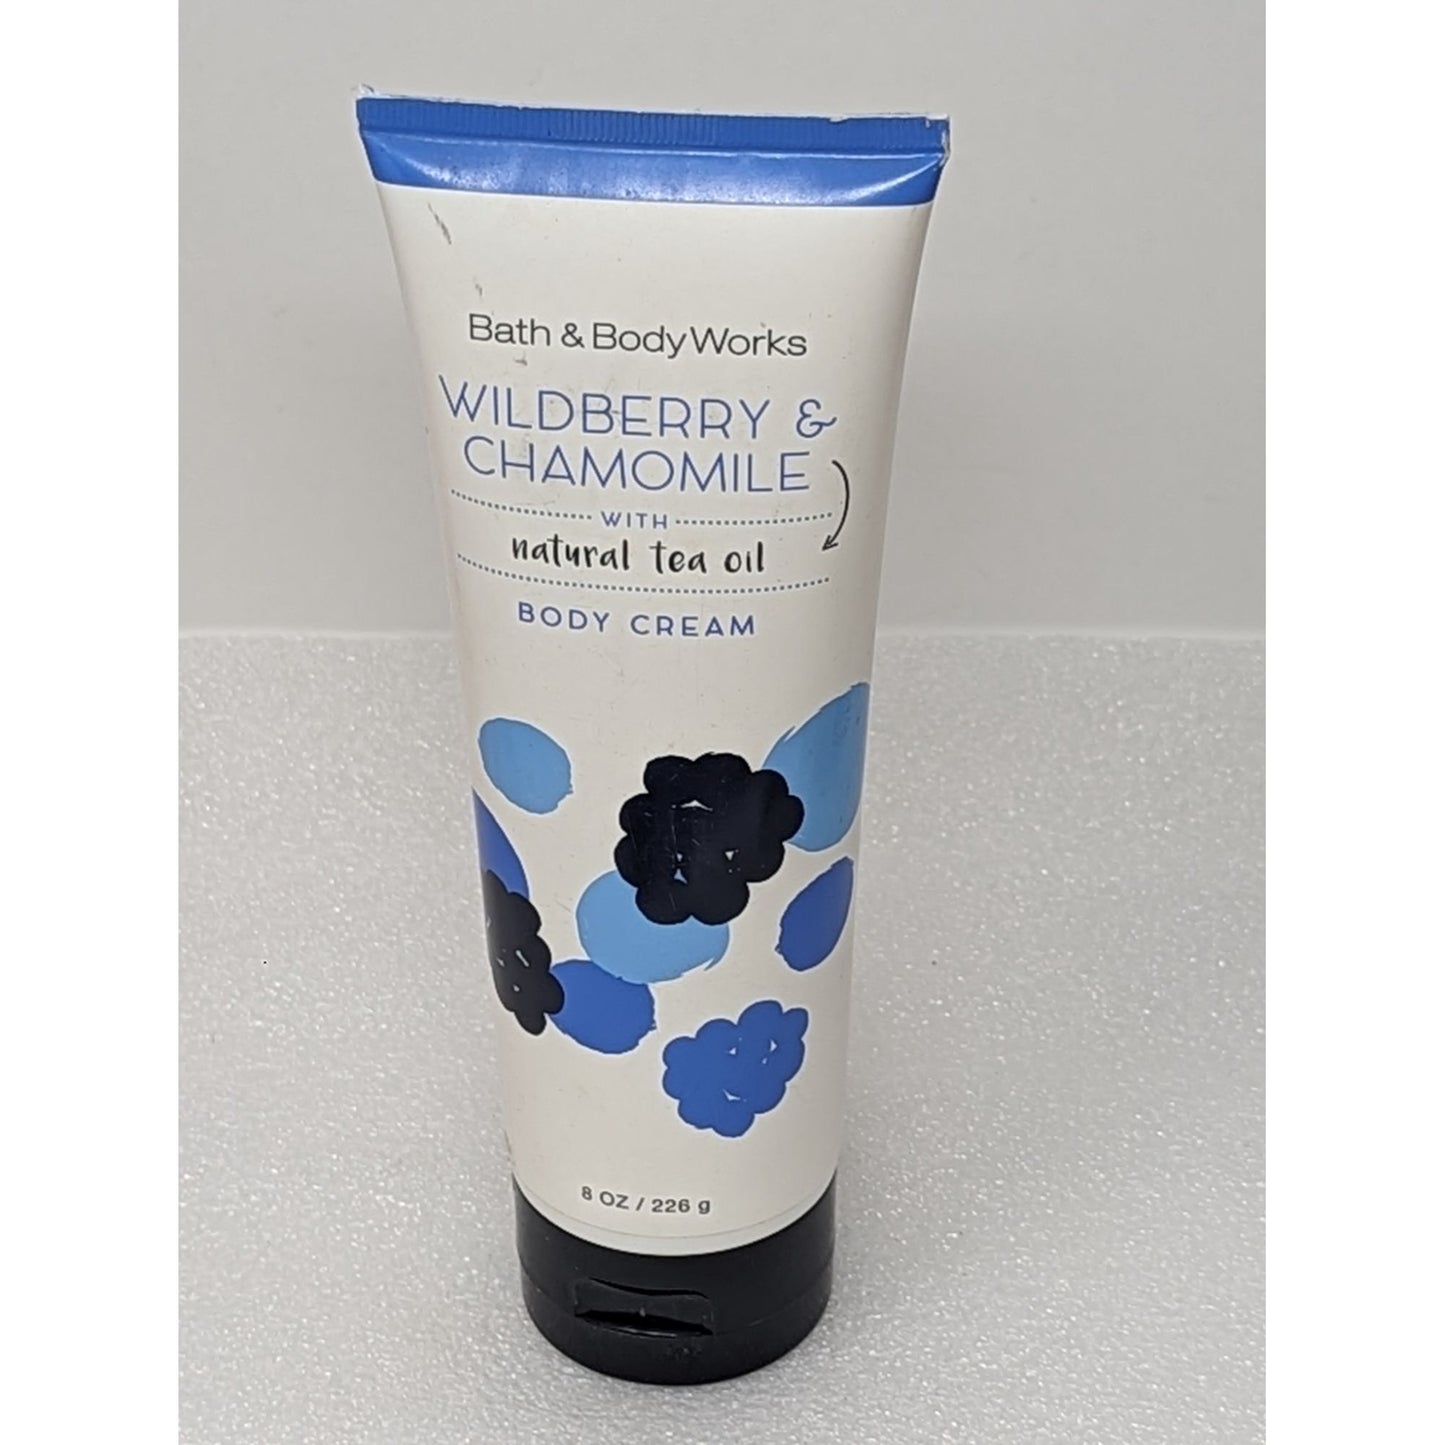 Bath & Body Works Wildberry & Chamomile Body Cream 8 oz Lotion